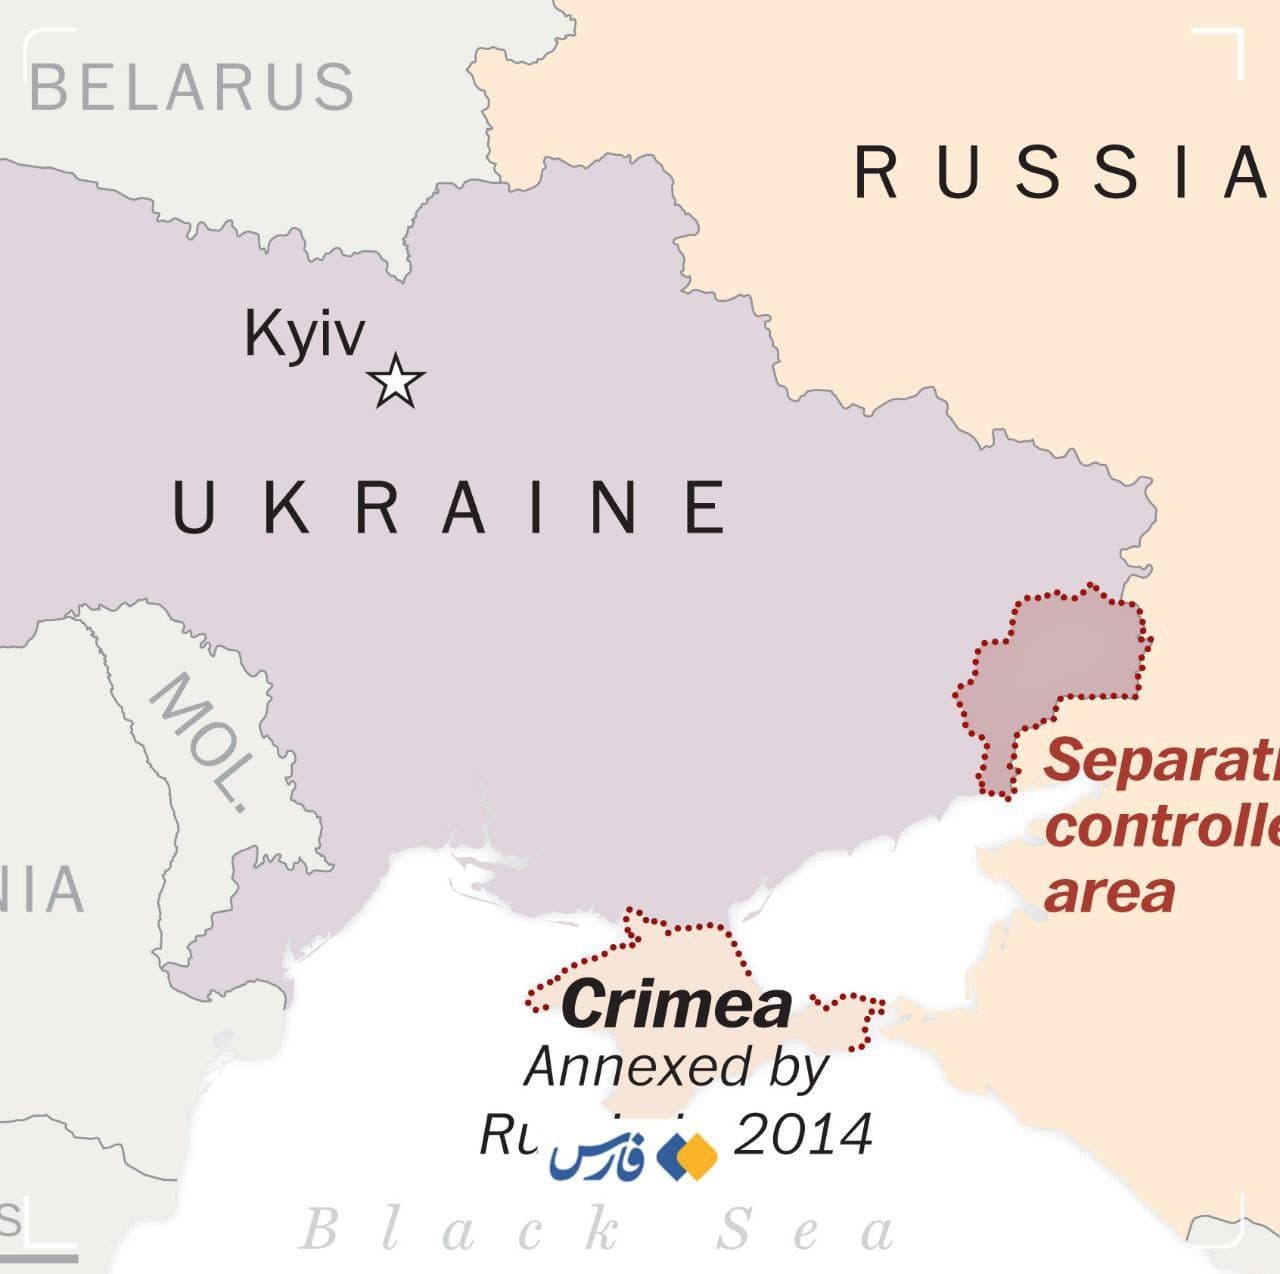 گوگل دسترسی به نقشه آنلاین را در اوکراین از دسترس خارج کرد